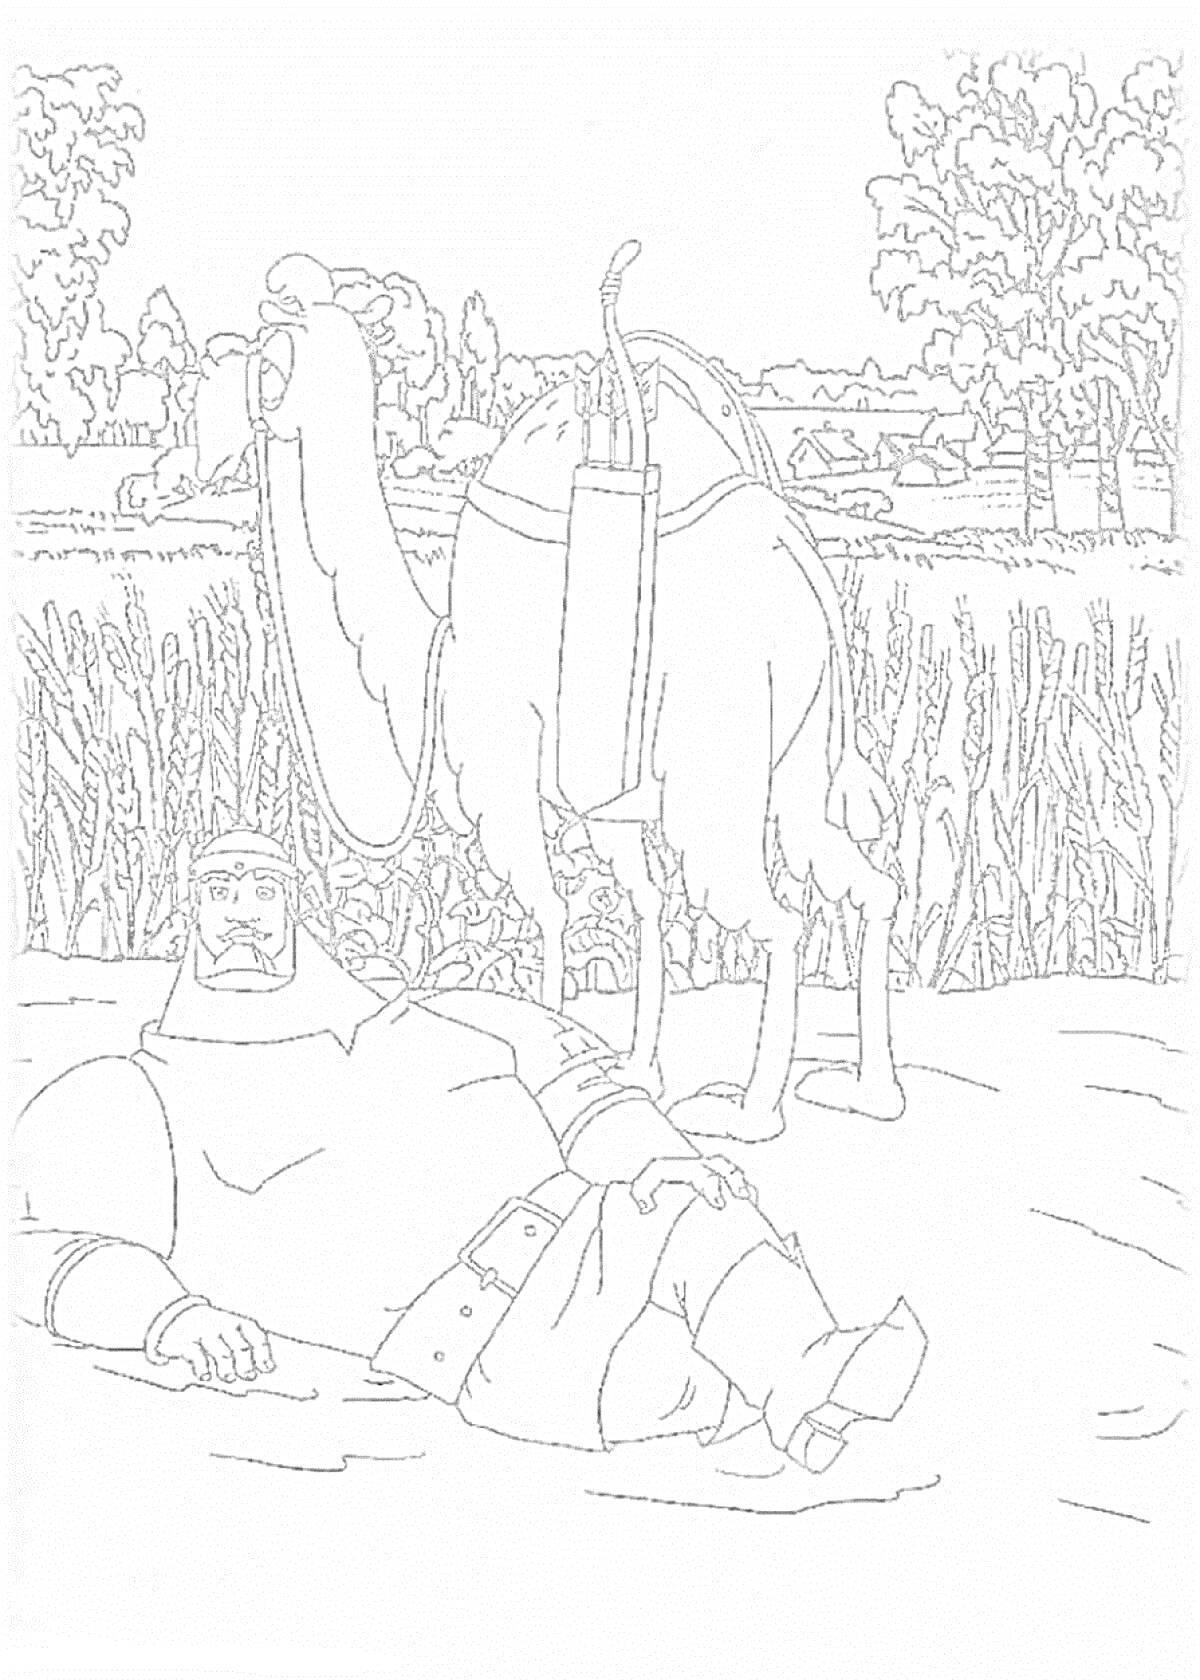 Воин лежит на земле рядом с верблюдом в поле, на фоне деревья и кусты